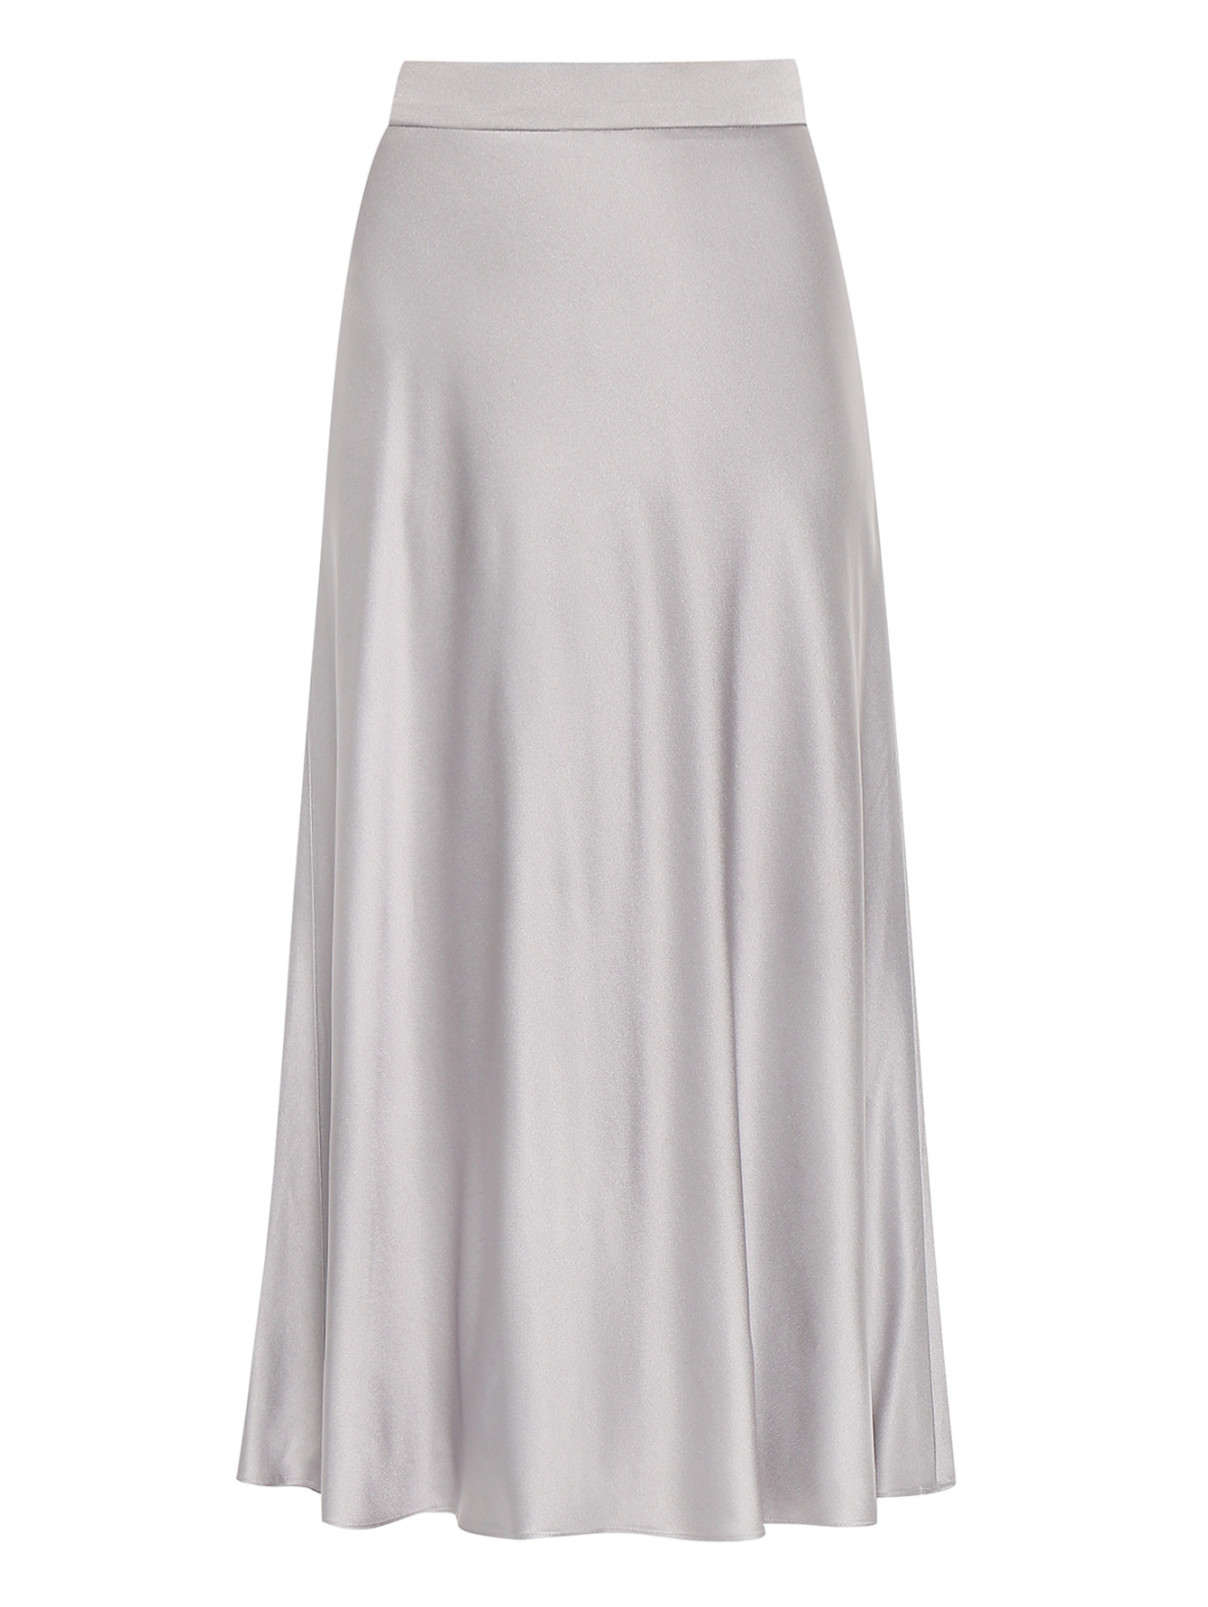 Однотонная юбка расклешенного кроя Luisa Spagnoli  –  Общий вид  – Цвет:  Серый